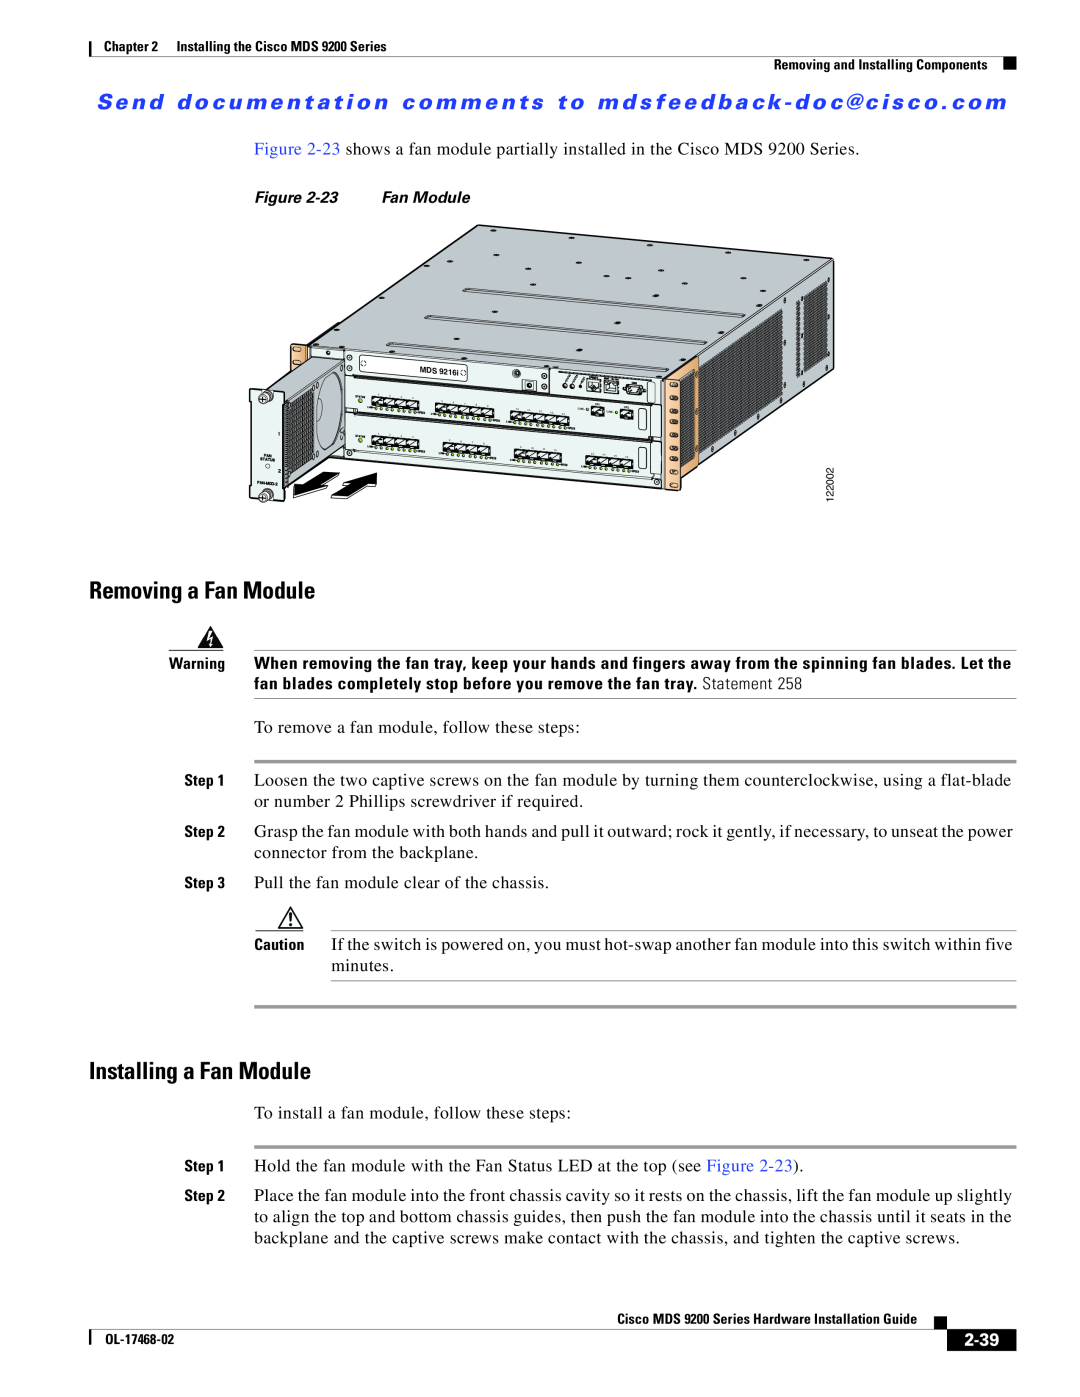 Cisco Systems MDS 9200 Series manual Removing a Fan Module, Installing a Fan Module, 2-39 